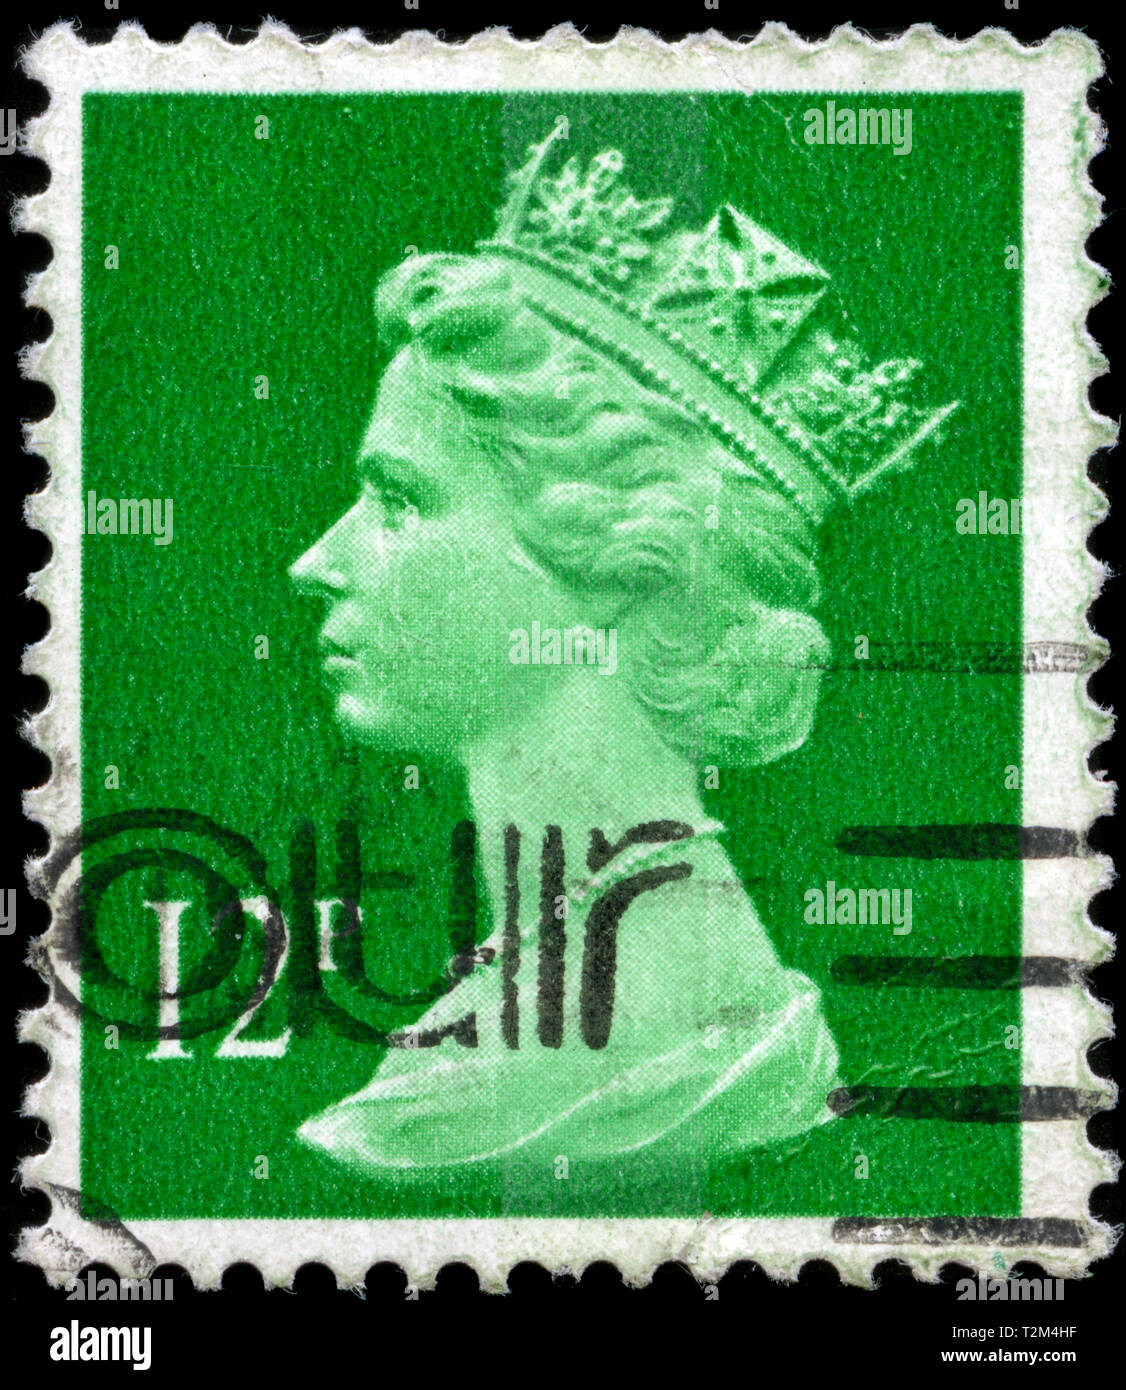 Timbre-poste du Royaume-Uni et l'Irlande du Nord dans le Queen Elizabeth II - virgule Machin - Normal Perfs série émise en 1985 Banque D'Images